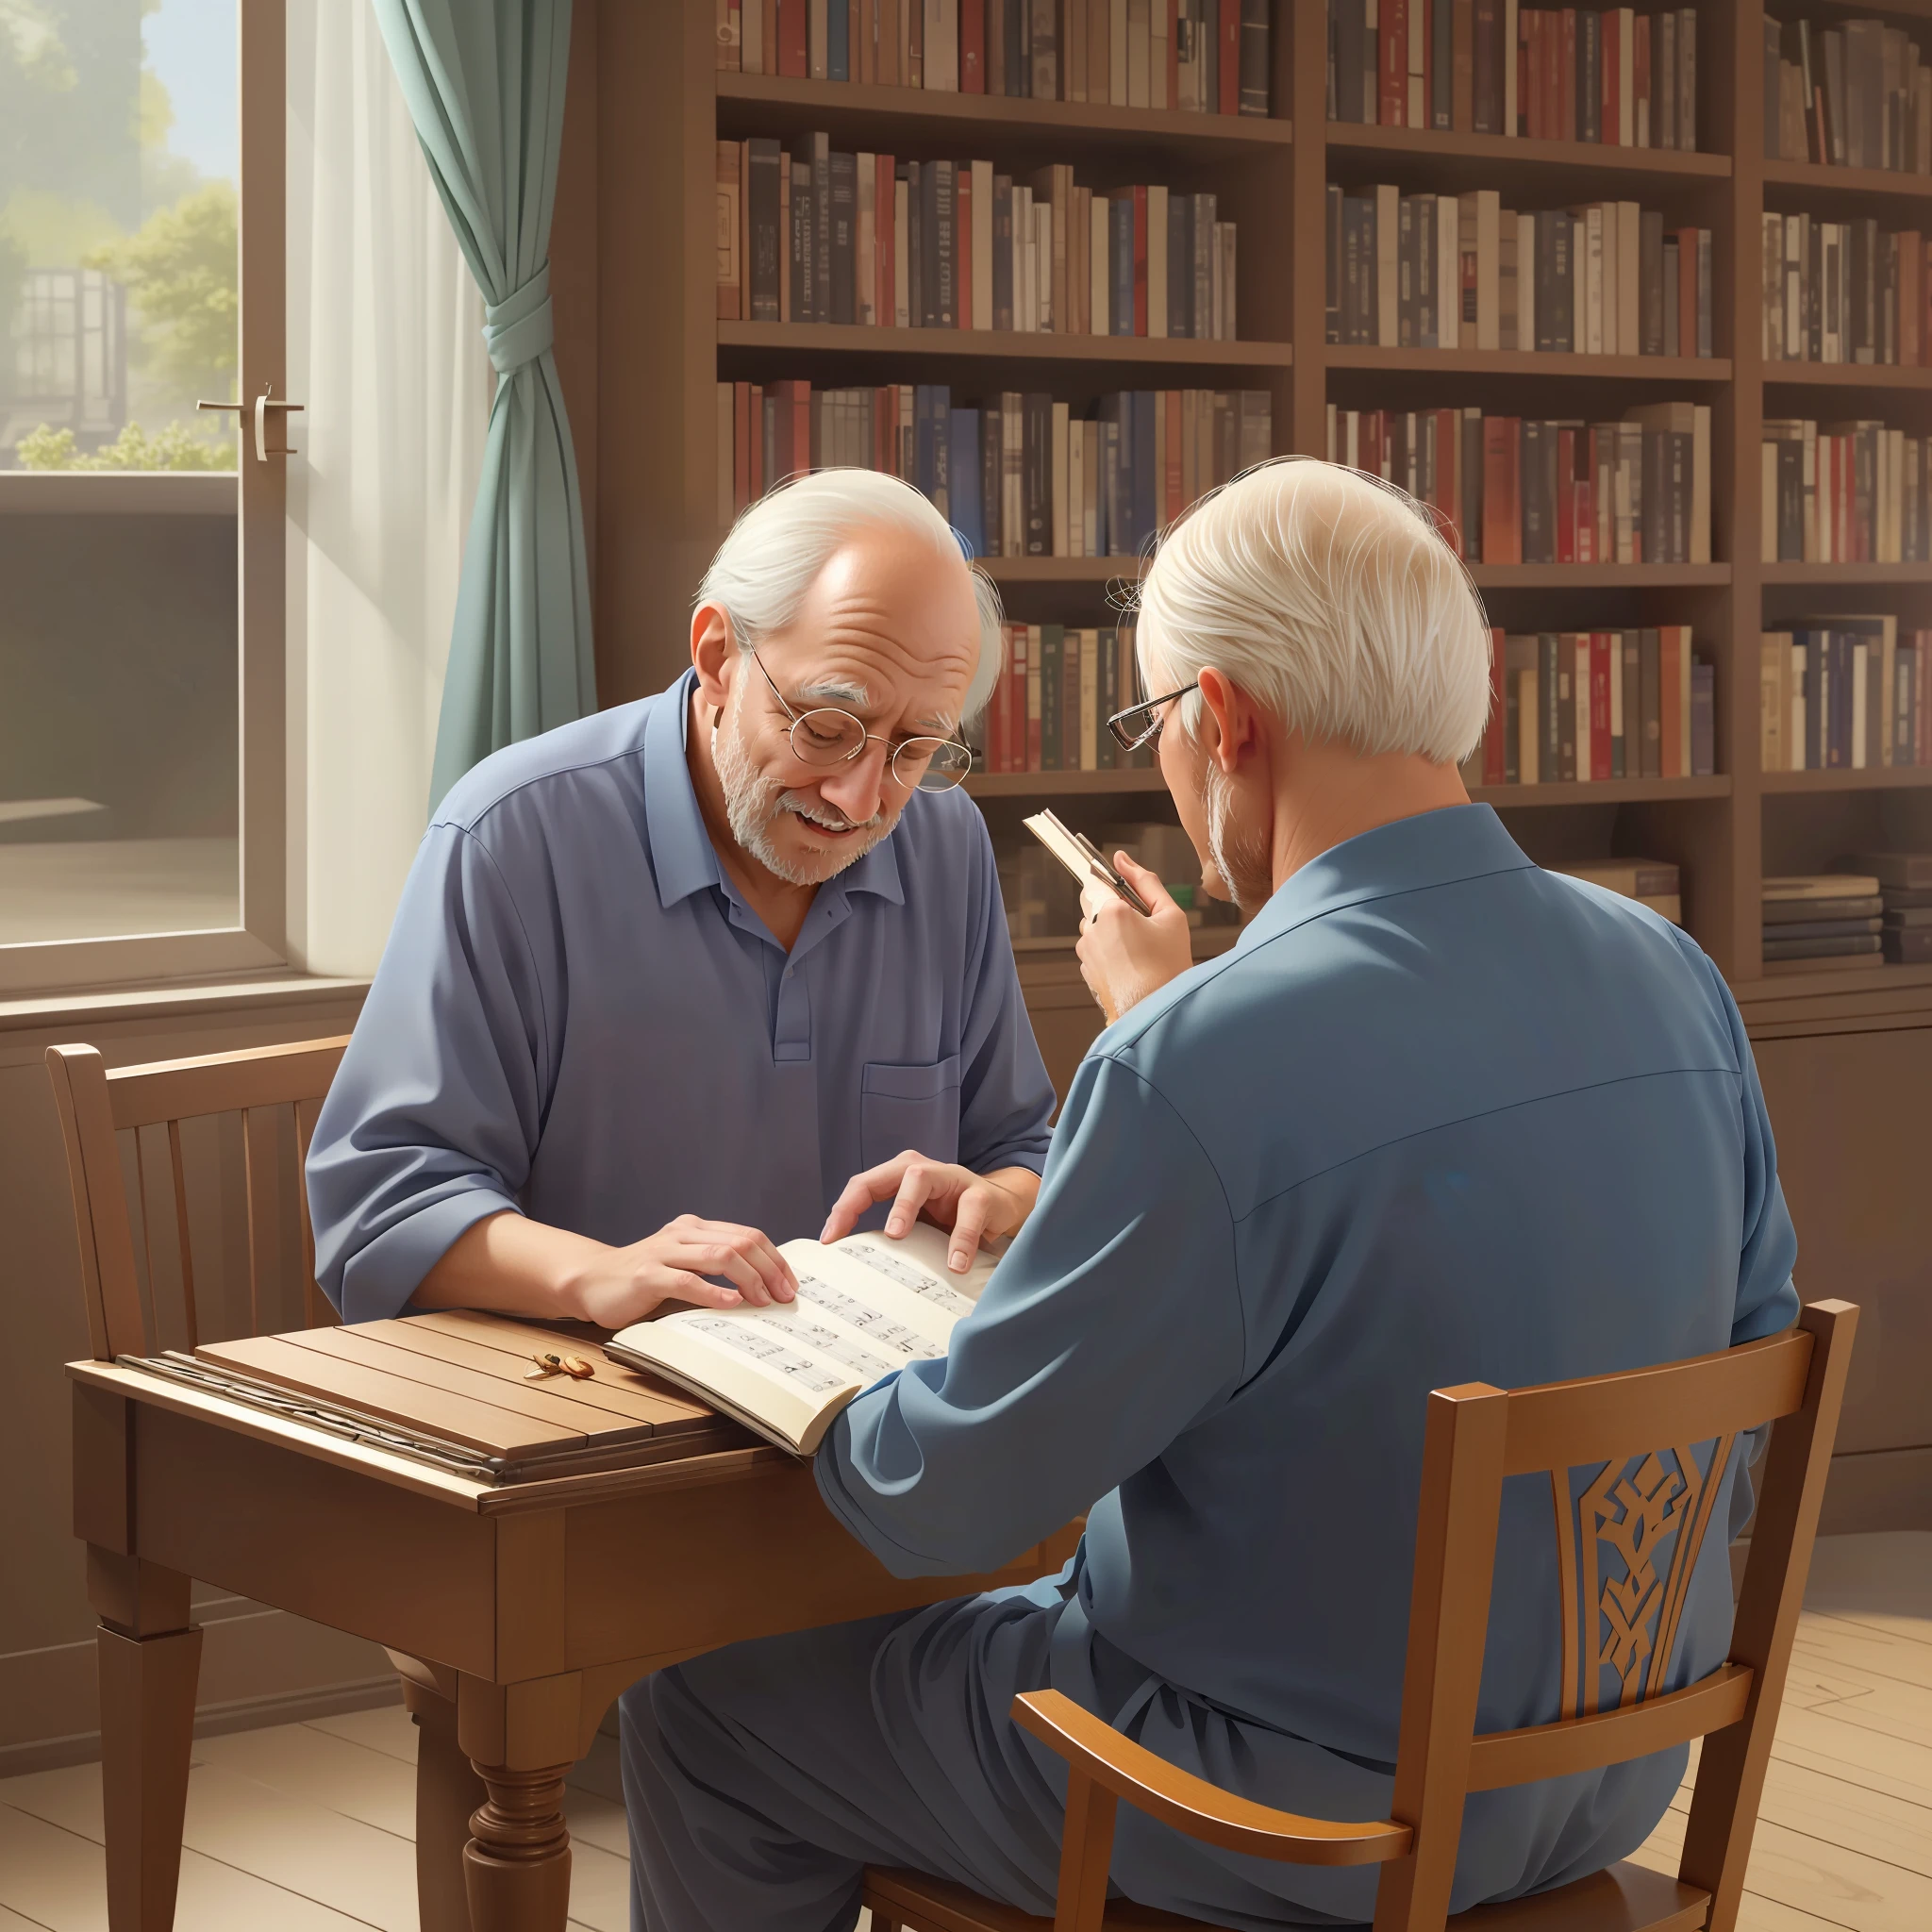 两位老人坐在桌边，手里拿着一本书和一架钢琴, 高品质 3D 插画, 以令人惊叹的细节呈现的艺术作品, 鲜艳的色彩和令人难以置信的真实感.